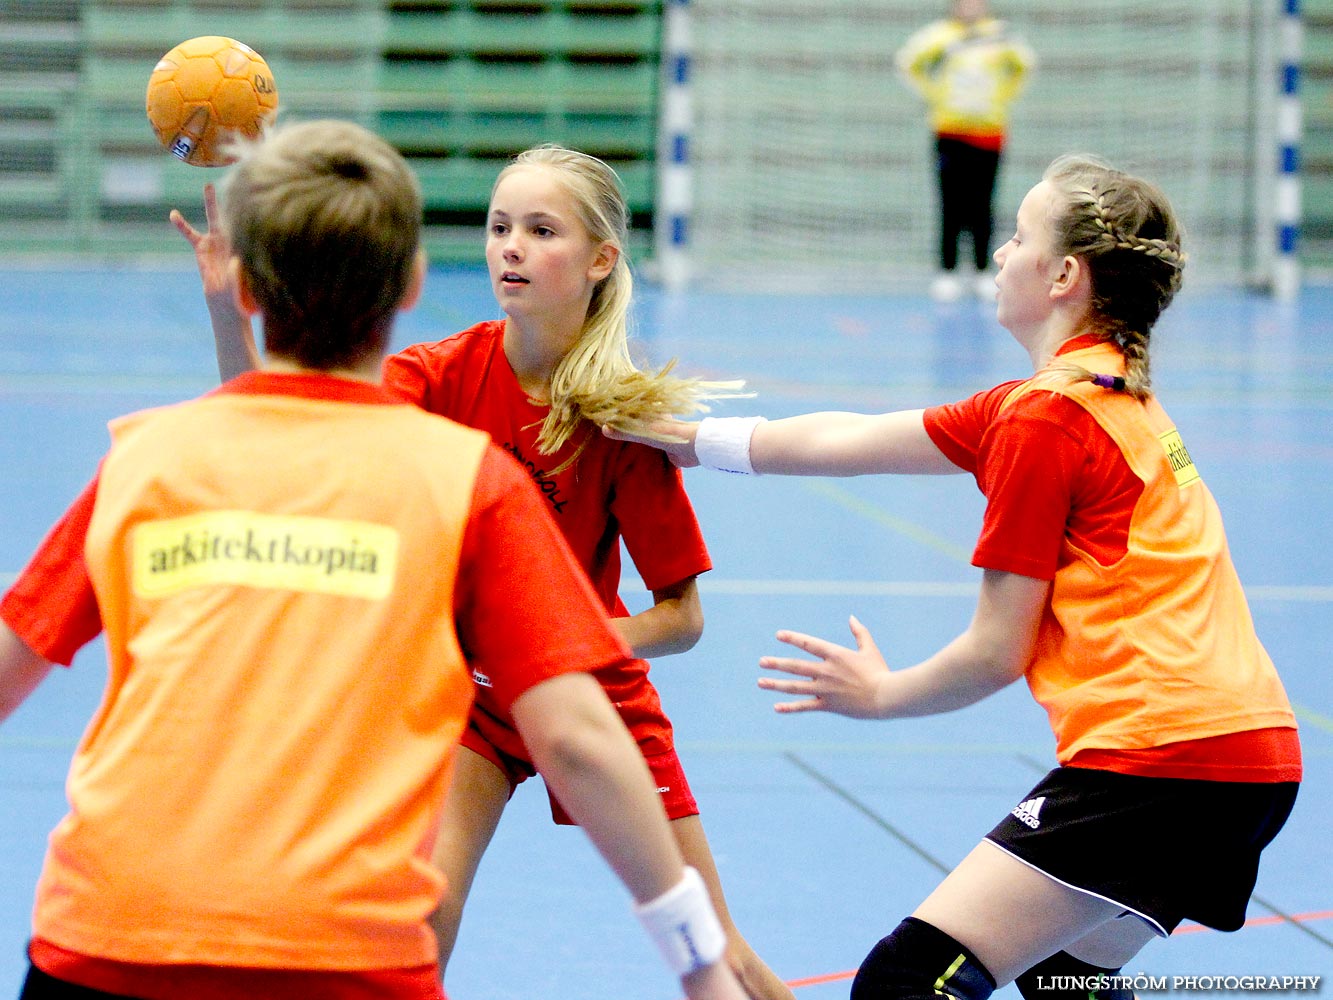 Klasshandboll Skövde 2013 Åldersklass 2001,mix,Arena Skövde,Skövde,Sverige,Handboll,,2013,63006